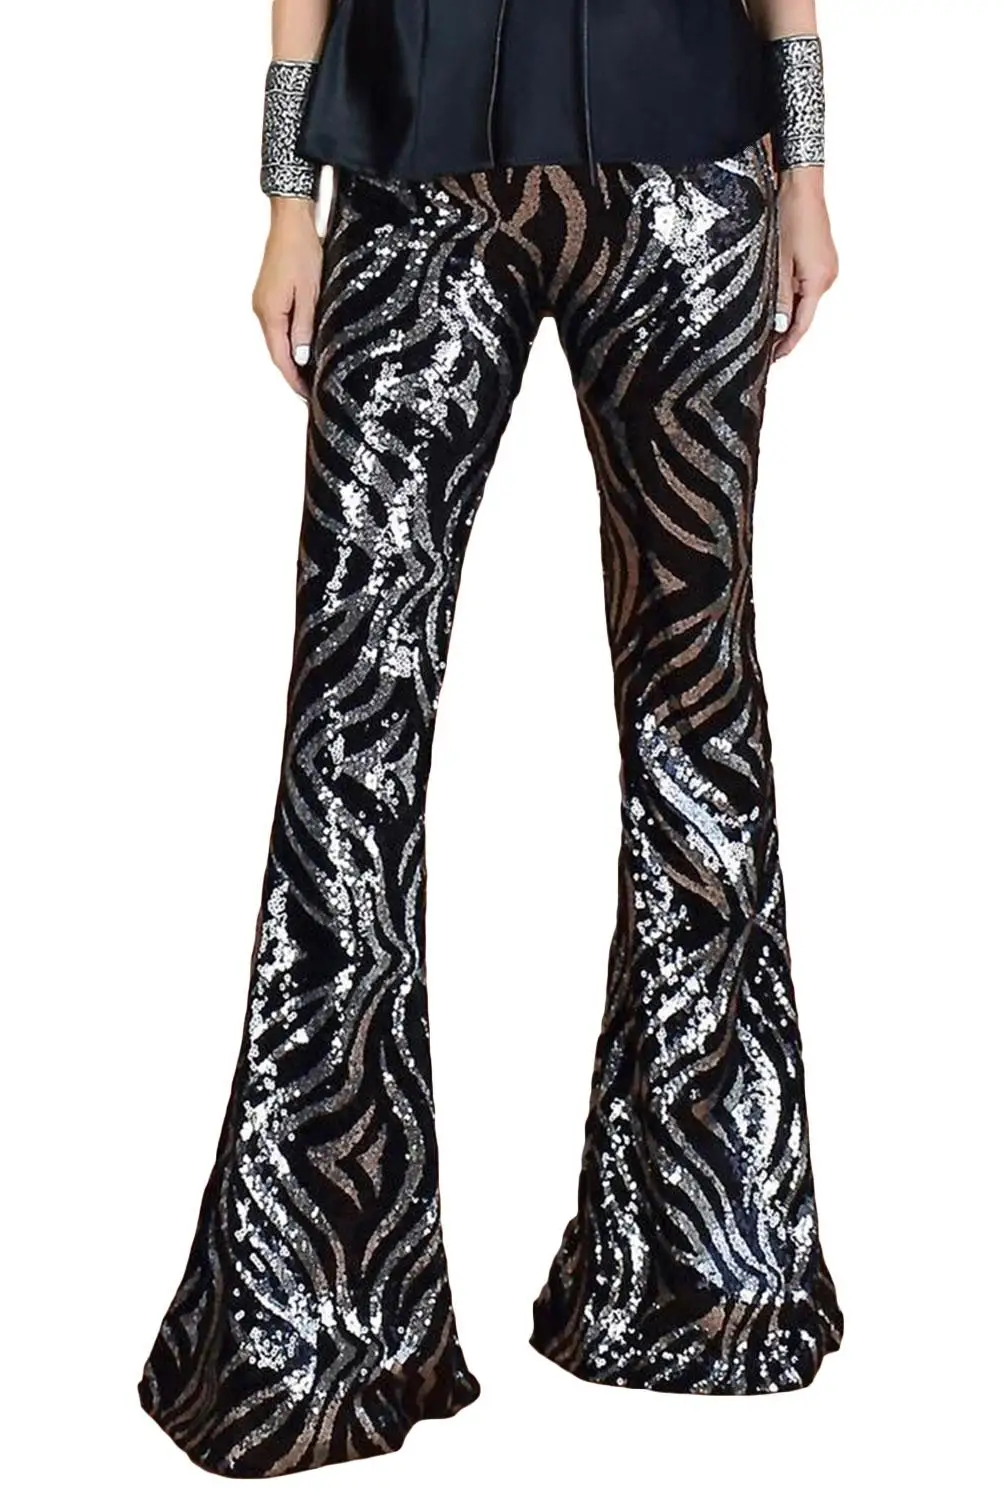 LIVA GIRL Swirl узор черный Серебряный блесток расклешенные брюки для женщин эластичные Высокая талия Длинные блесток брюки женские танцевальные брюки XL - Цвет: Черный